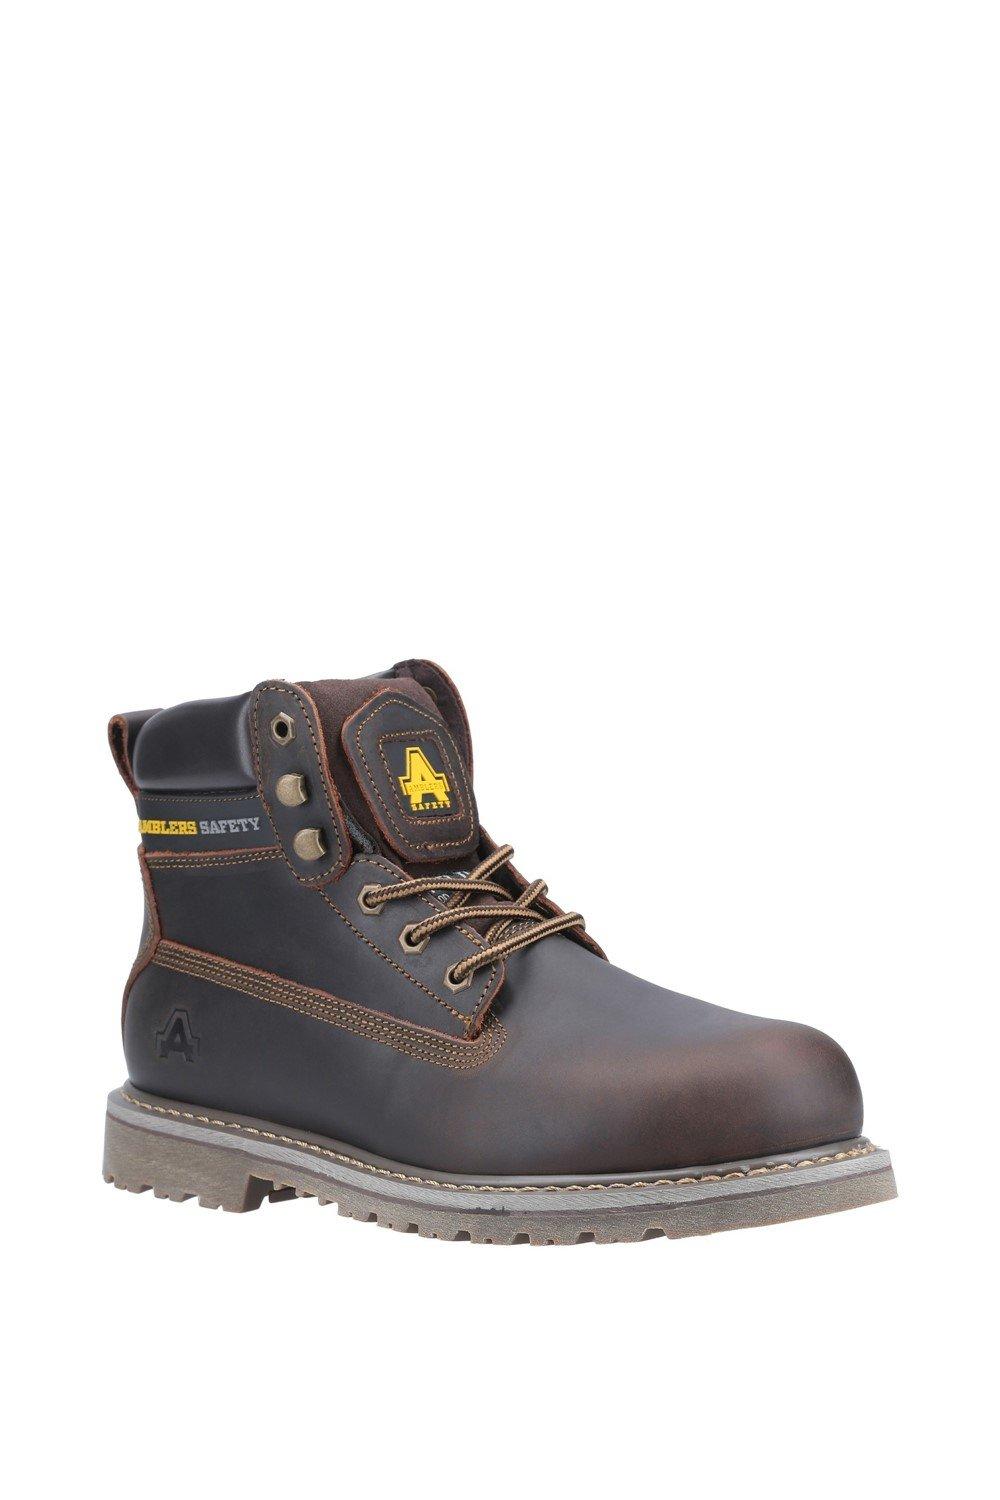 Защитные ботинки с рантами 'FS164' Amblers Safety, коричневый